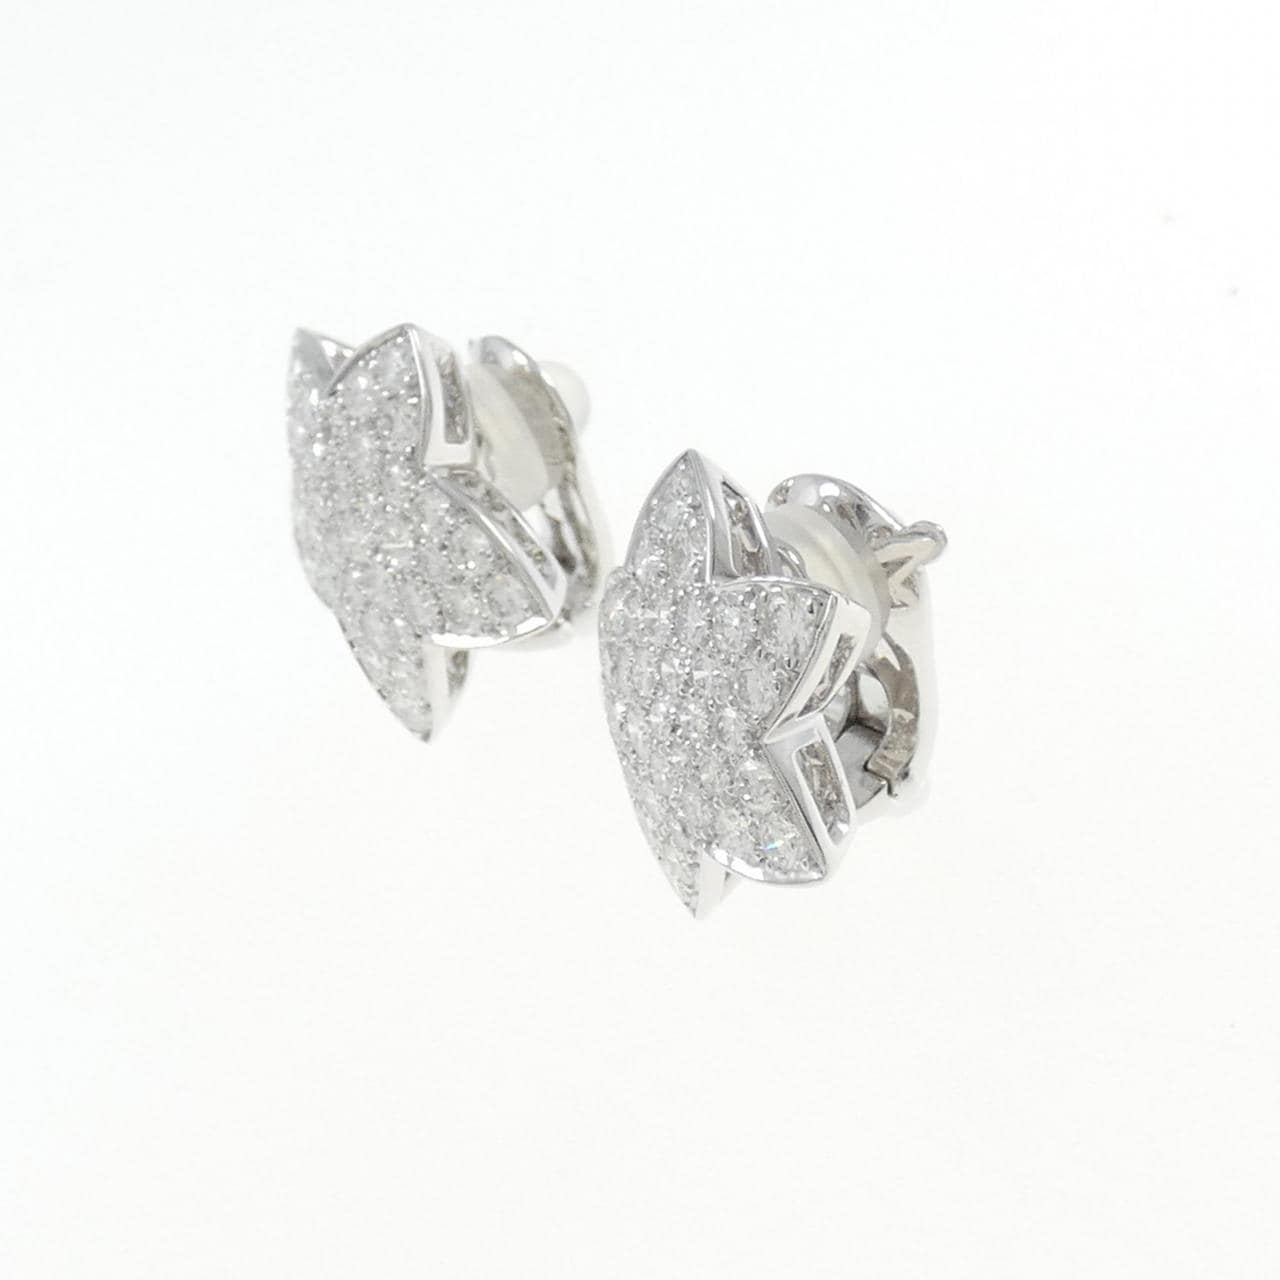 梵克雅寶 (Van Cleef & Arpels)鑽石耳夹